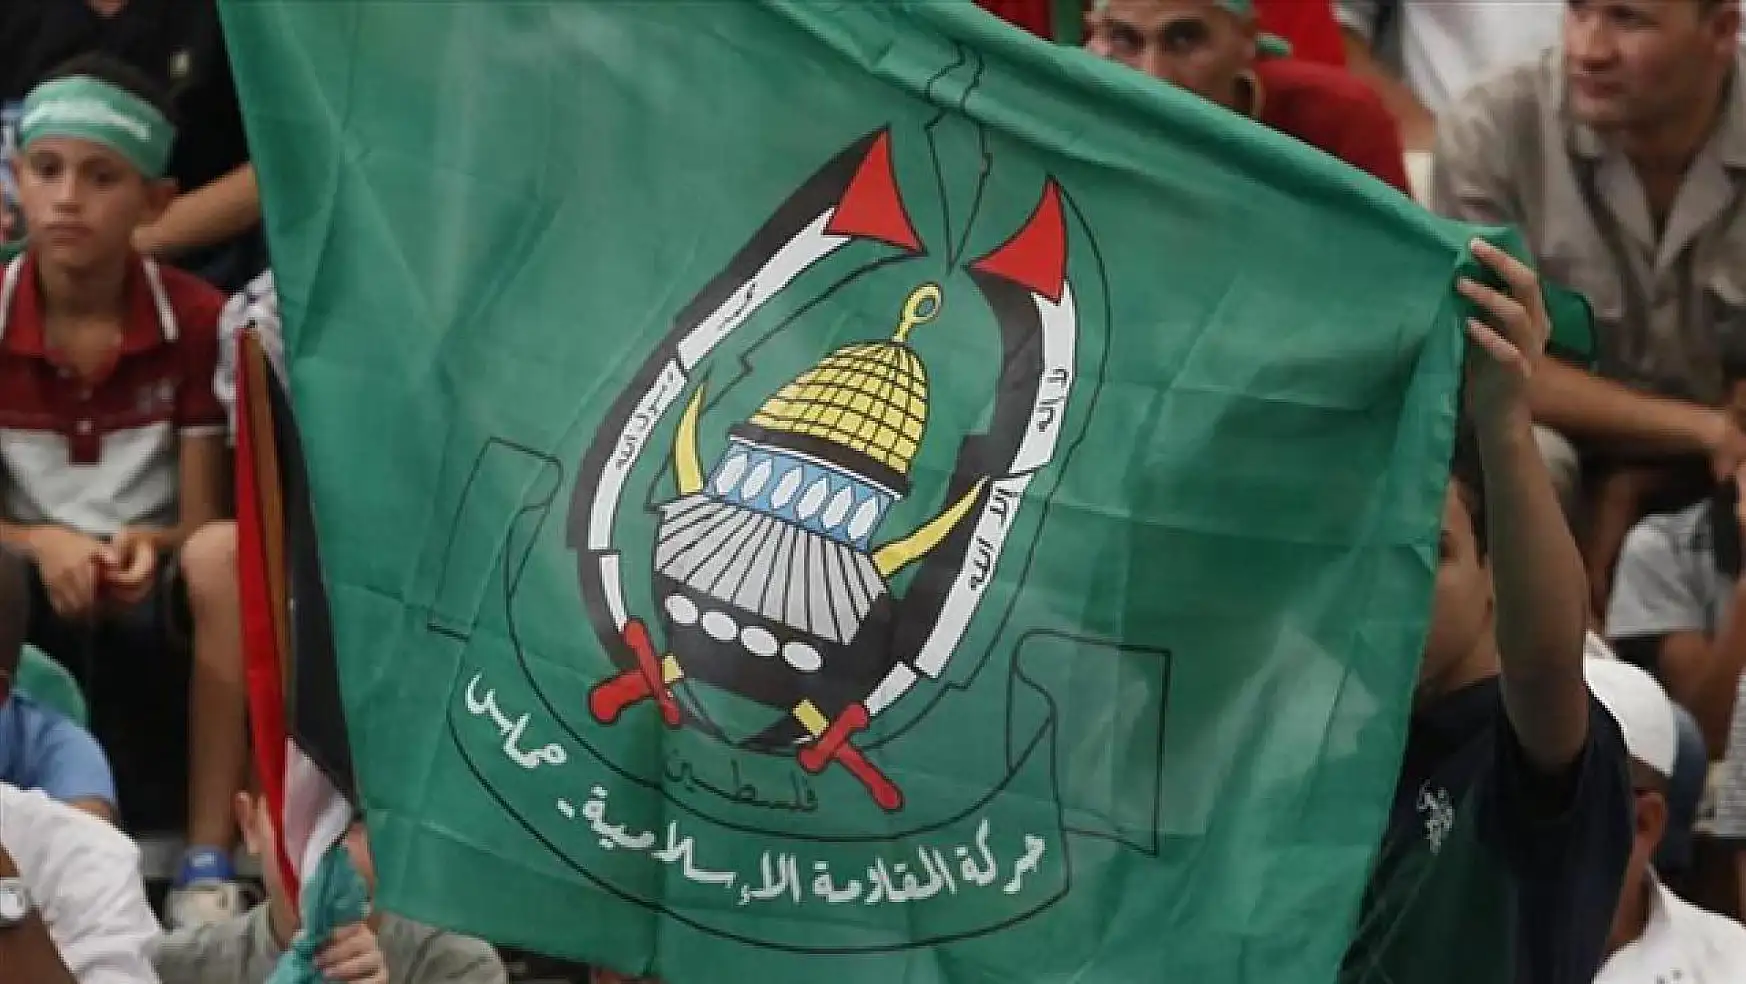 Hamas ABD'nin tutumu sivillerin katledilmesinden muaf değil